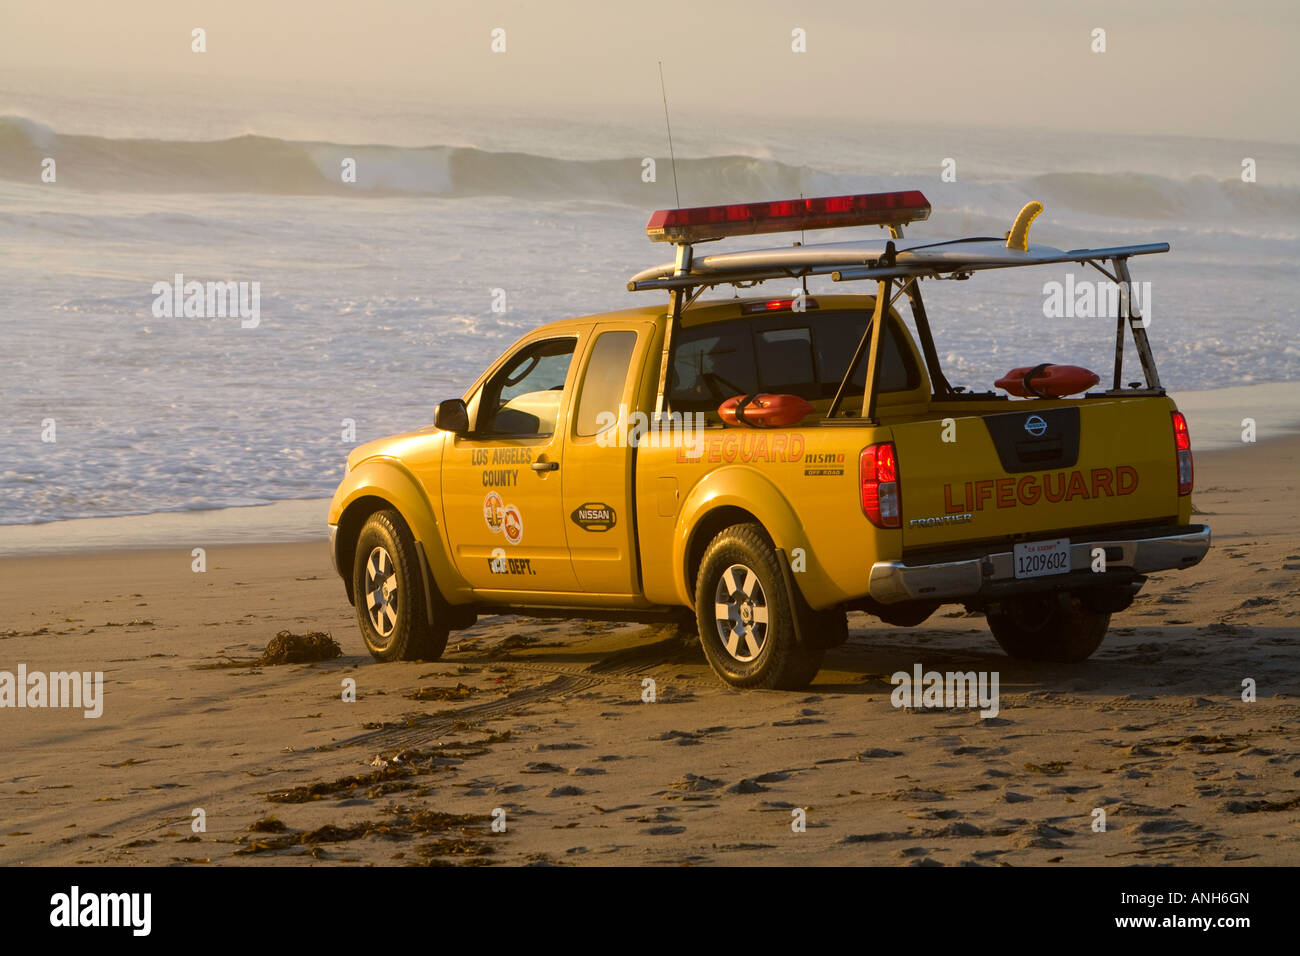 Los Angeles County Lifeguard regardant des grosses vagues à partir de son camion à Zuma Beach Malibu Los Angeles County California United States Banque D'Images